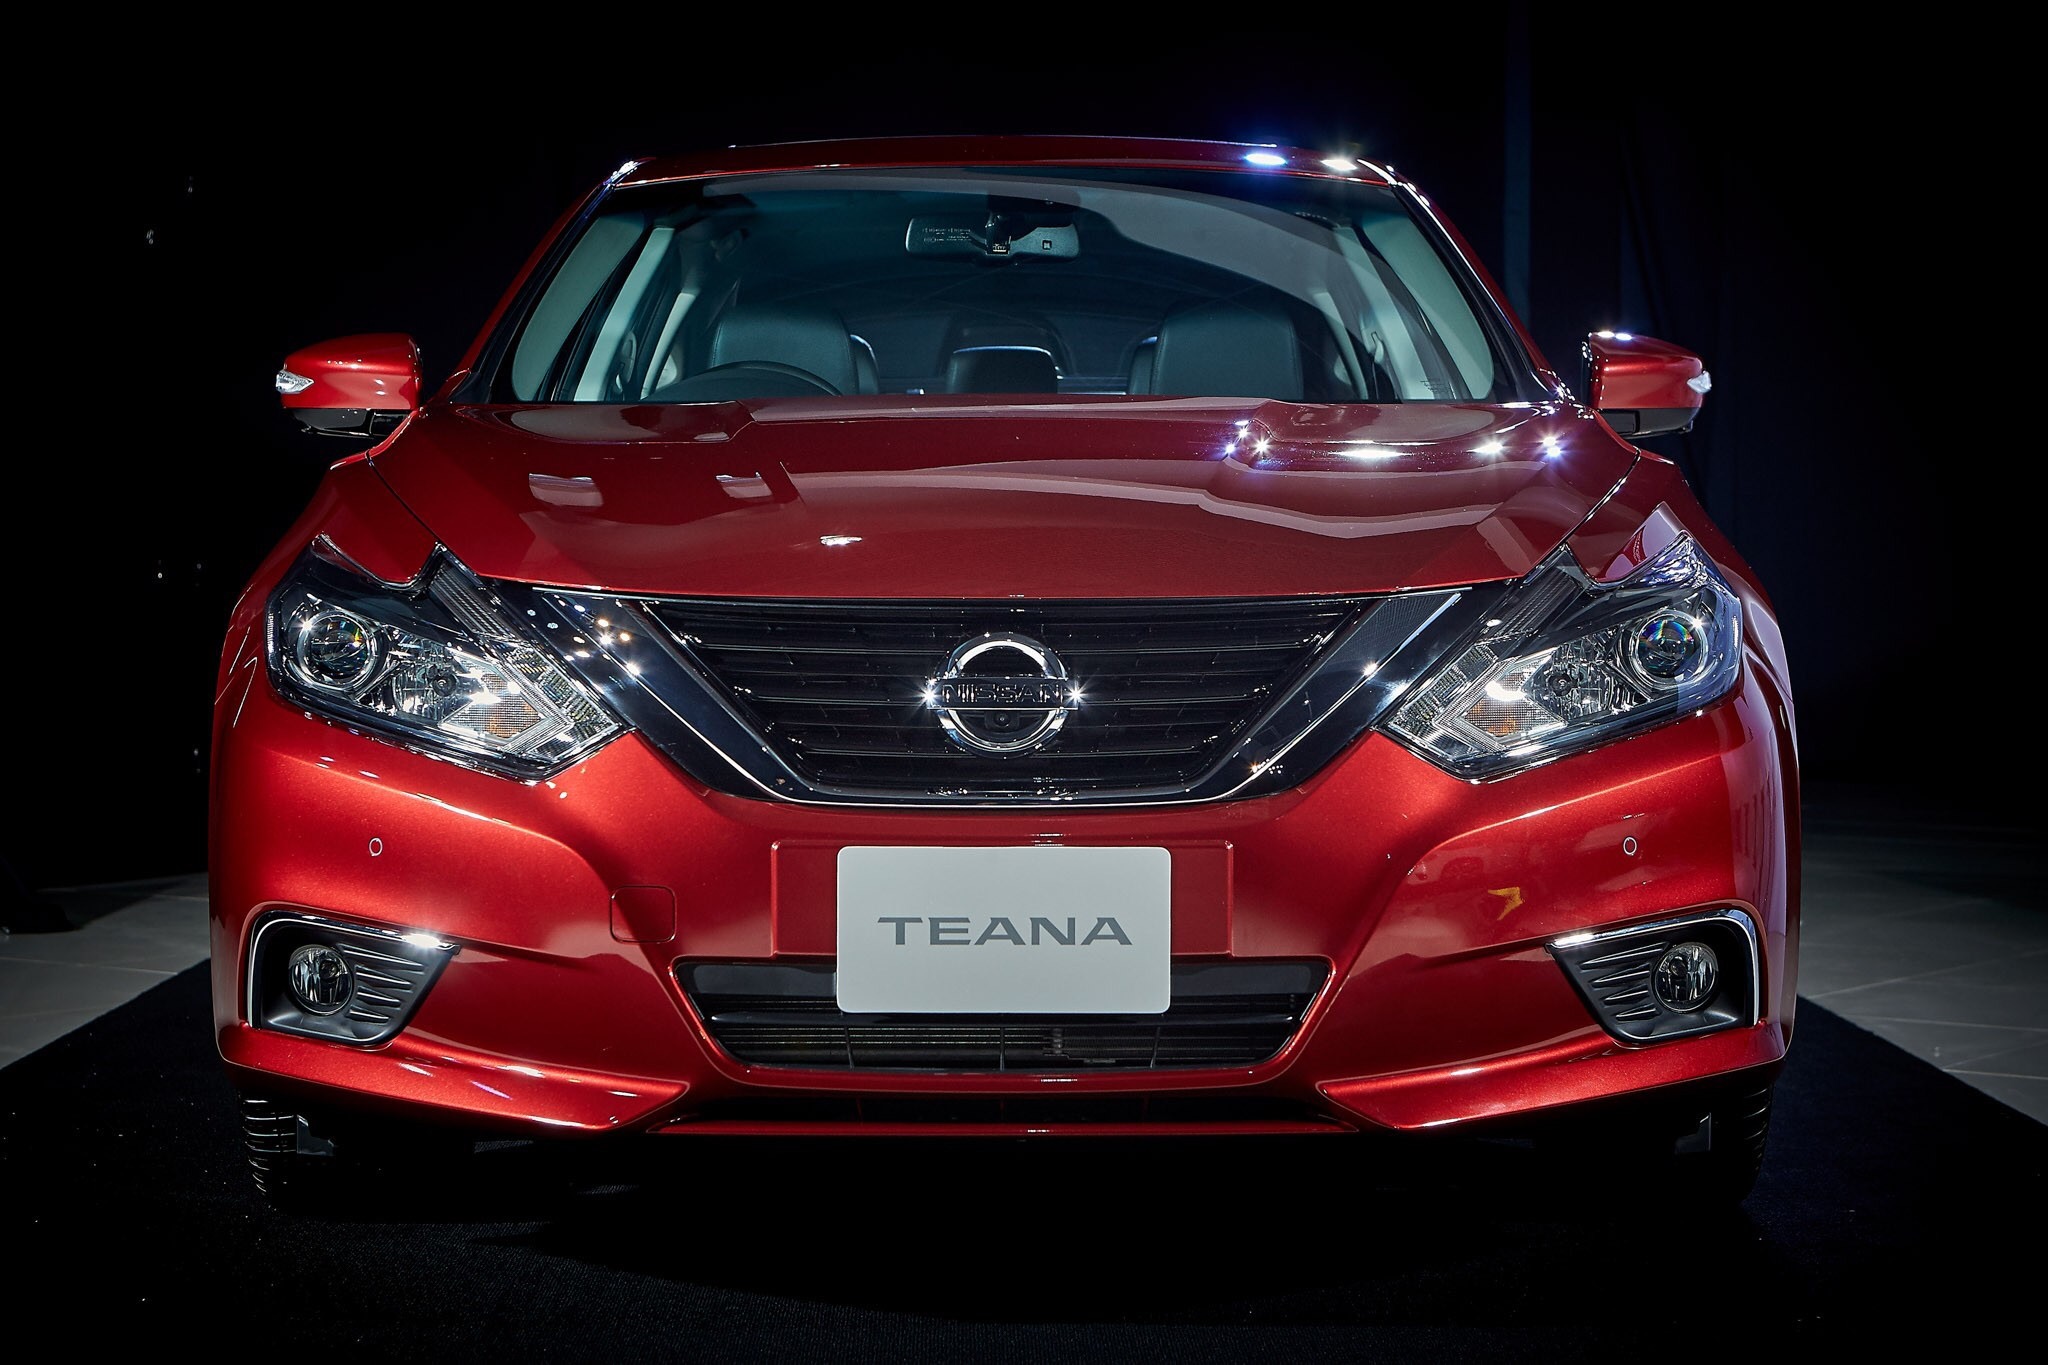 Nissan Teana 2.0 XL Navi 2019 นิสสัน เทียน่า ปี 2019 : ภาพที่ 3